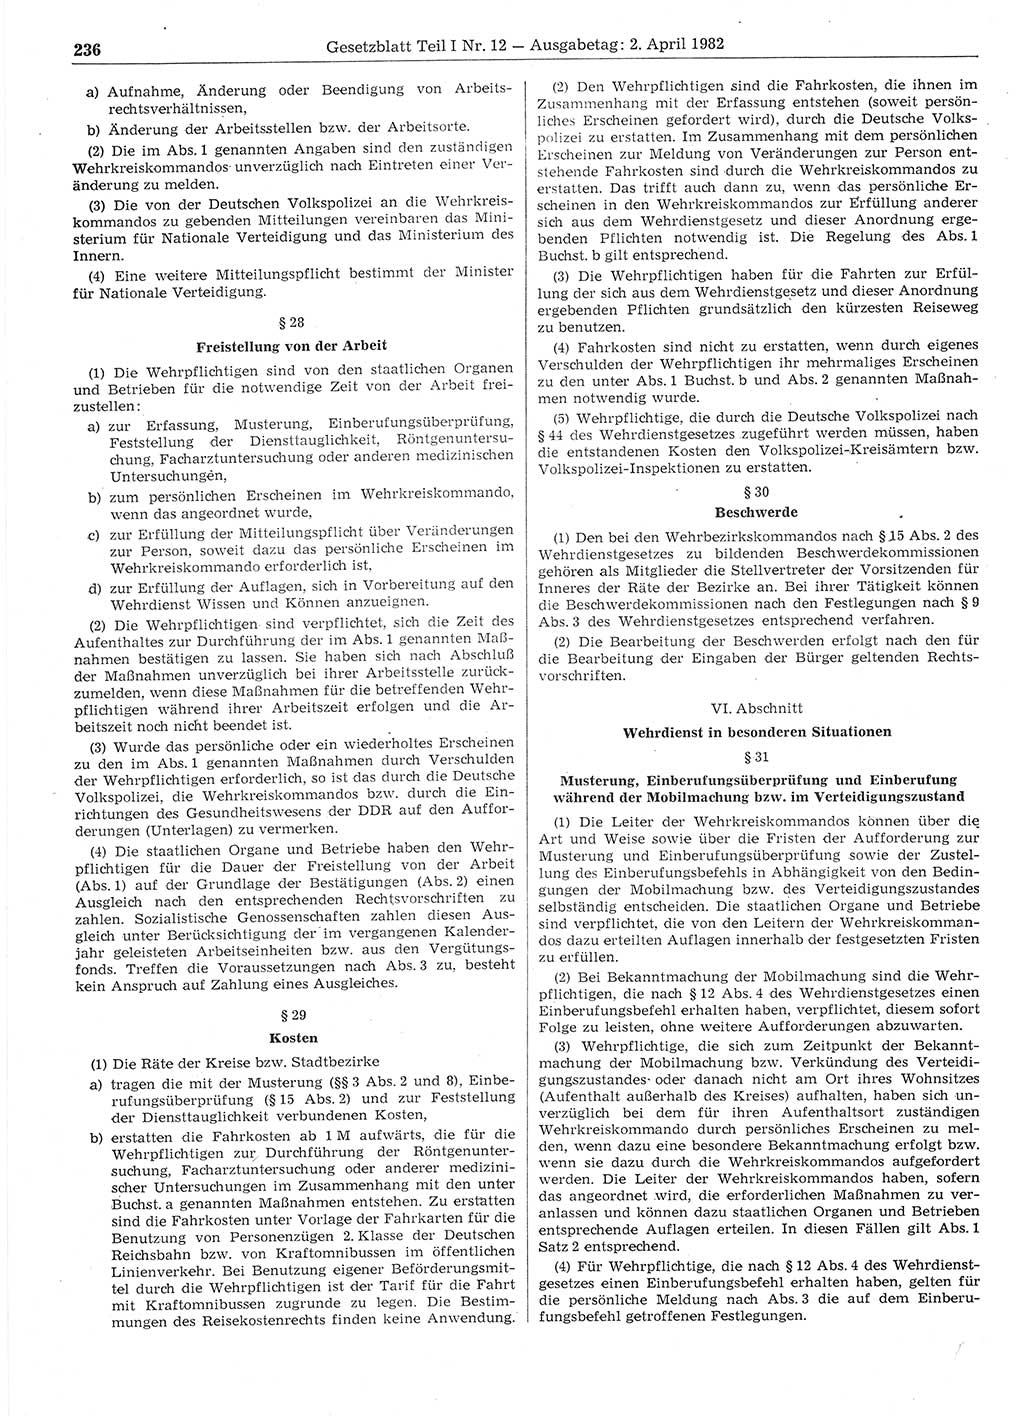 Gesetzblatt (GBl.) der Deutschen Demokratischen Republik (DDR) Teil Ⅰ 1982, Seite 236 (GBl. DDR Ⅰ 1982, S. 236)